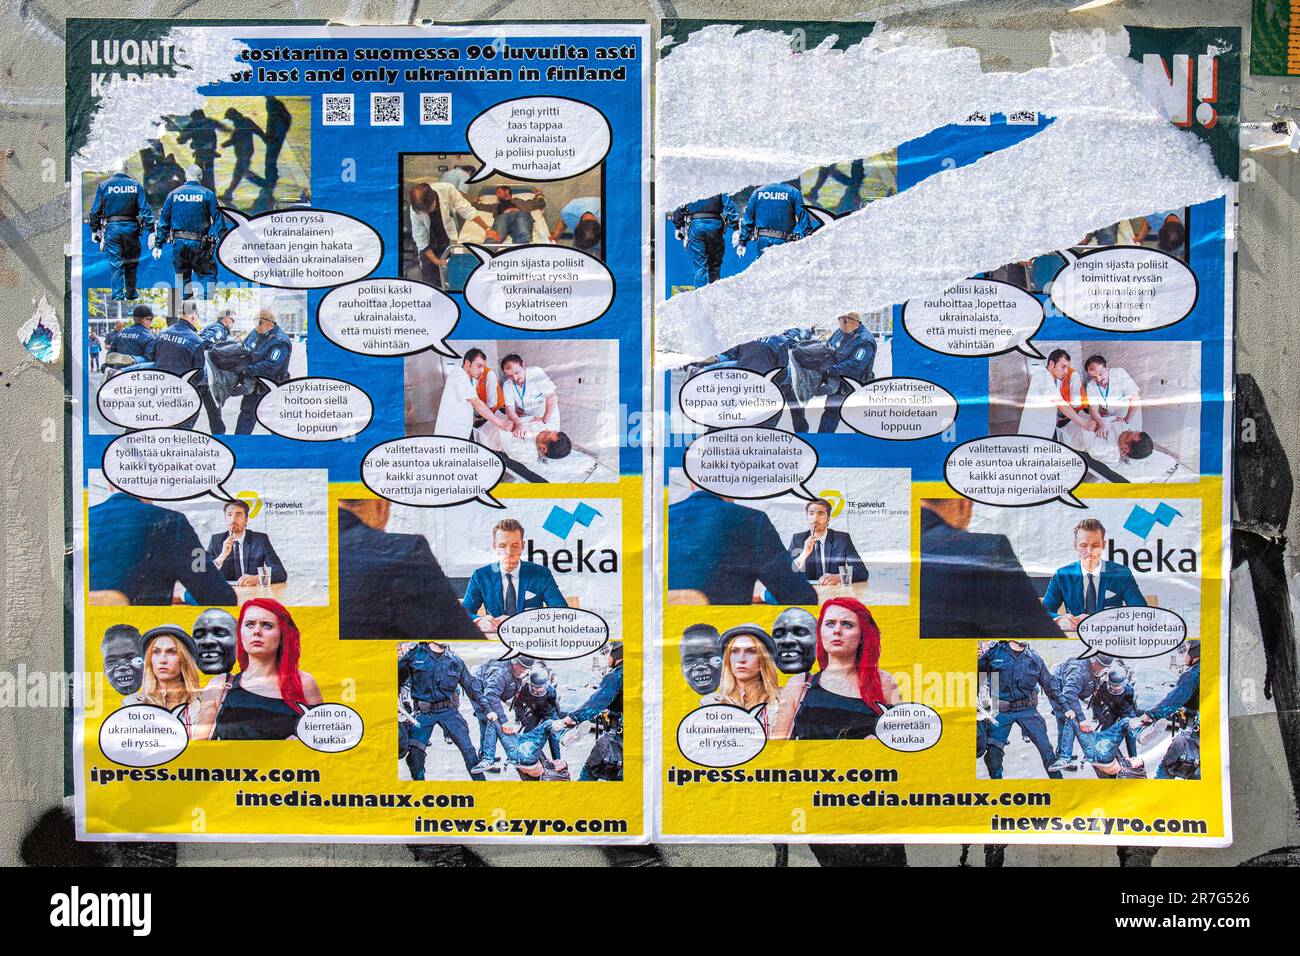 Affiches de propagande russe confuses et racistes à Helsinki, en Finlande Banque D'Images